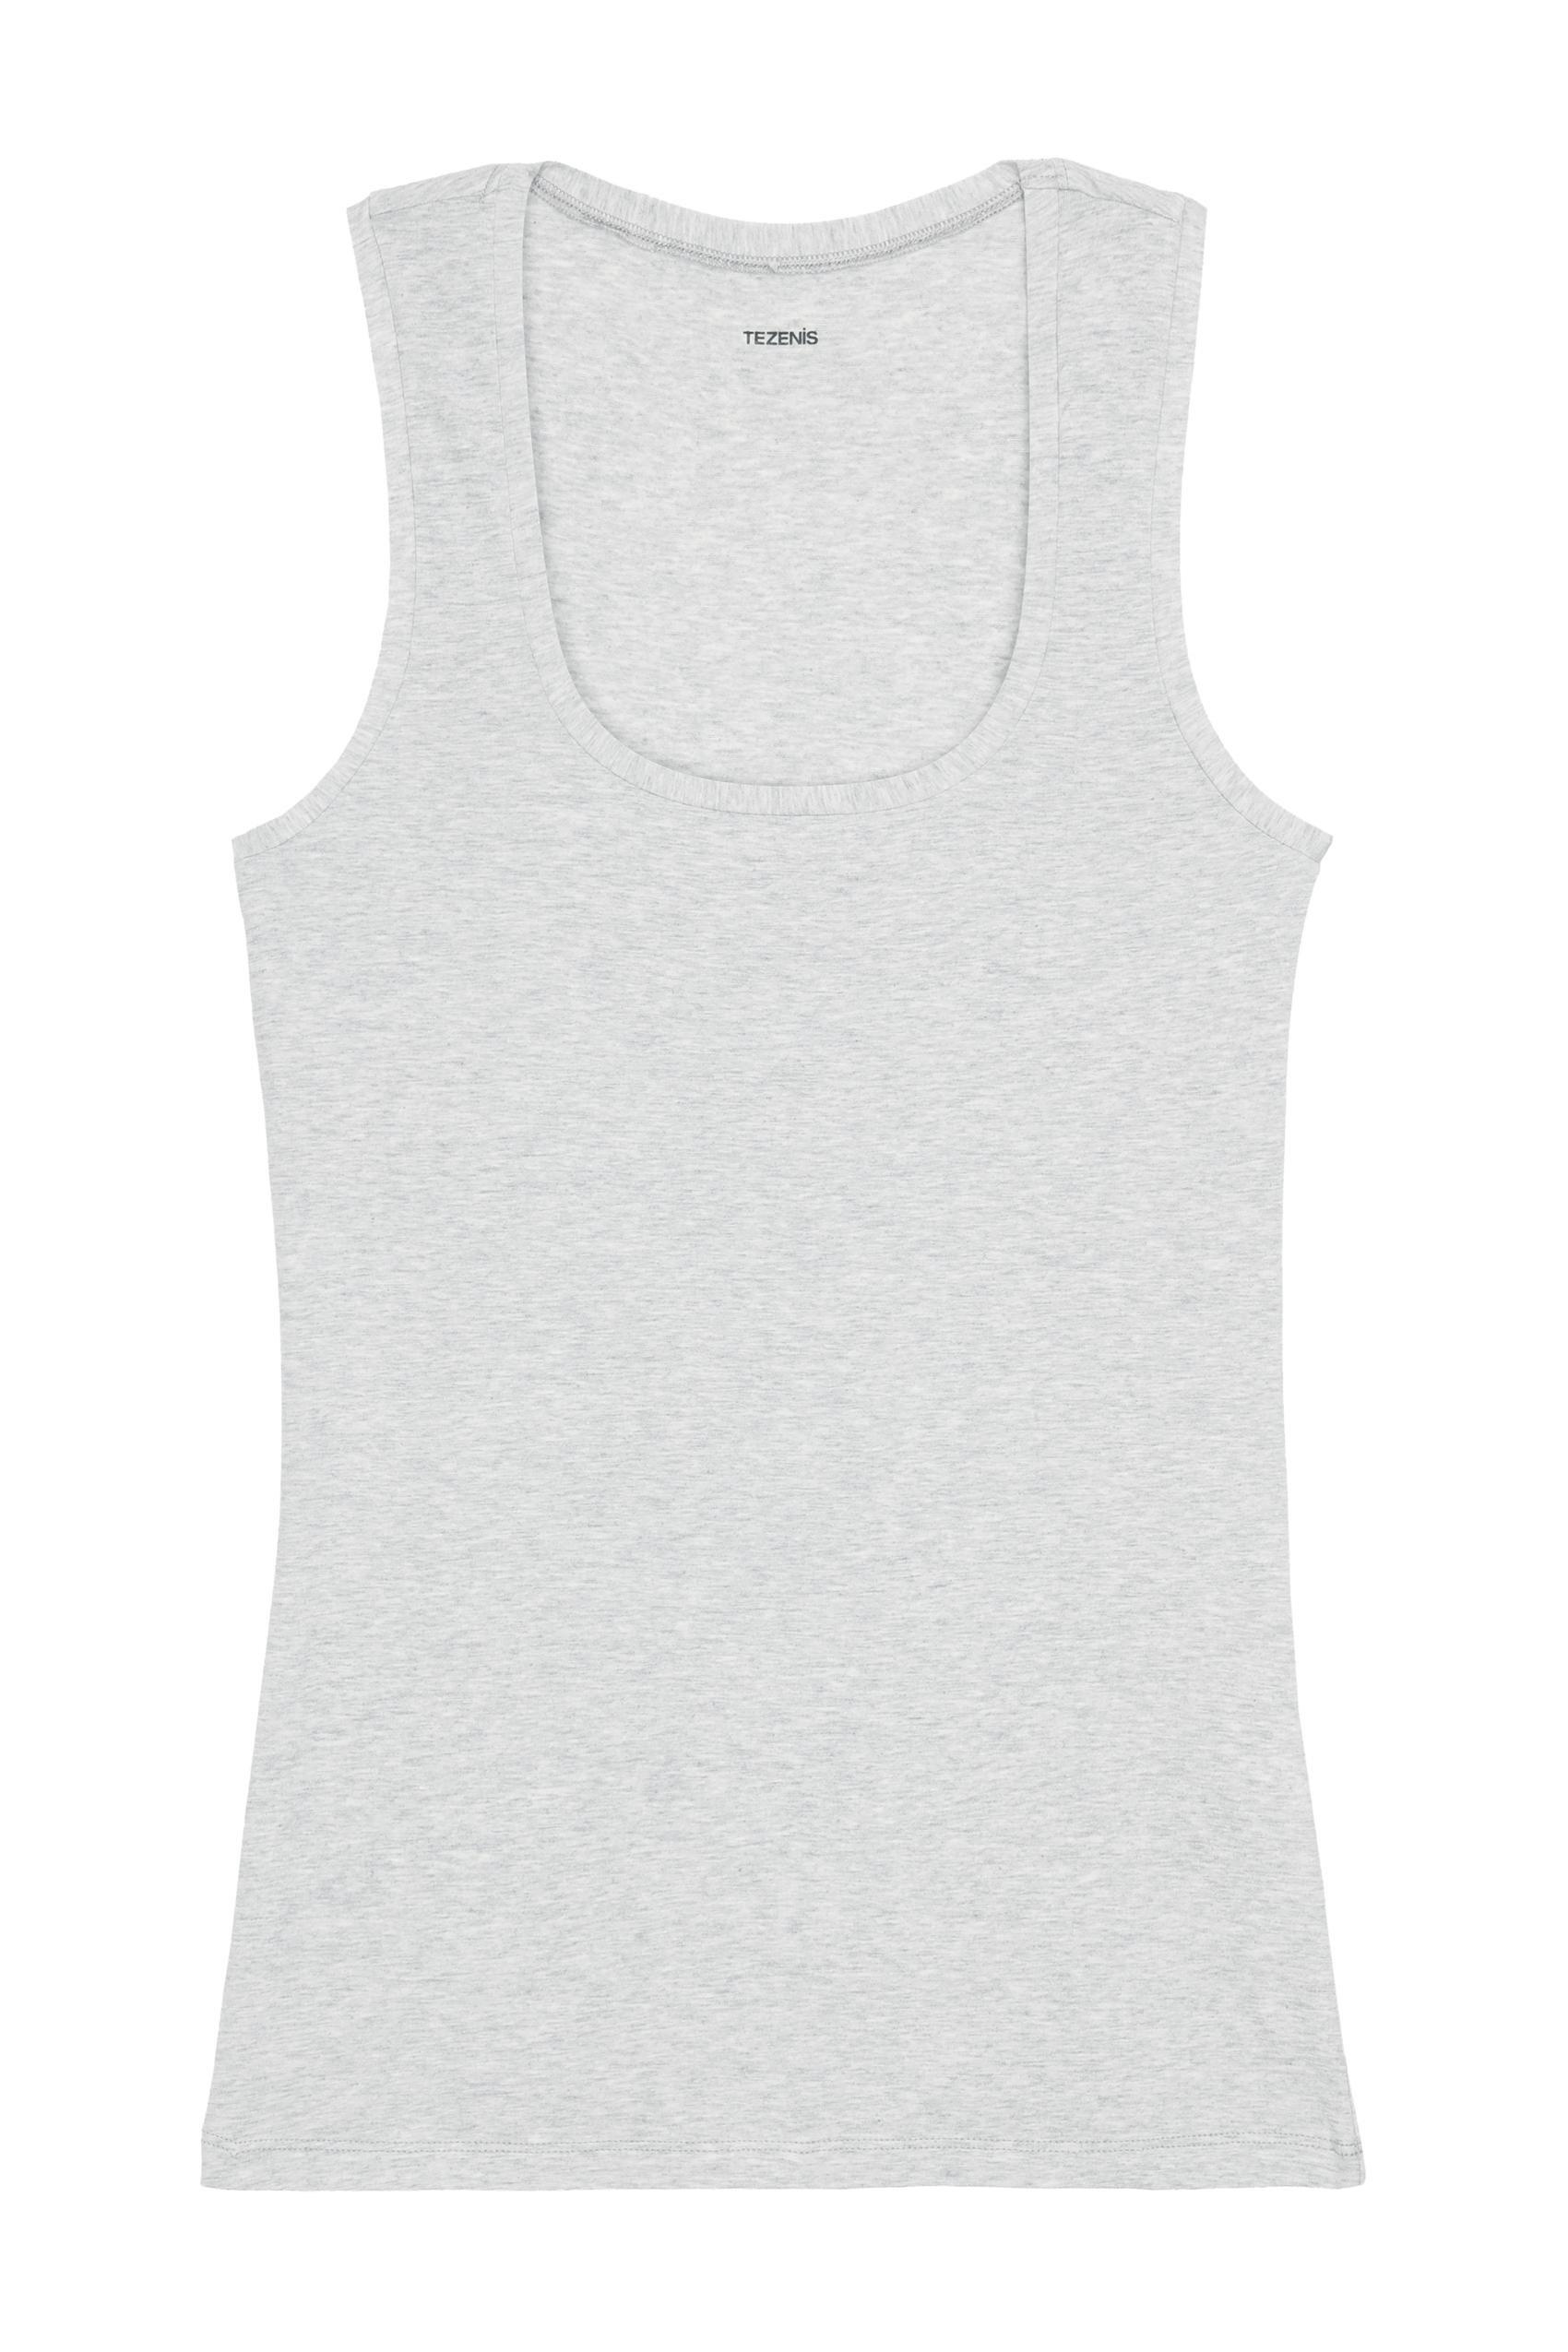 Tezenis - Grey Stretch-Cotton Vest Top